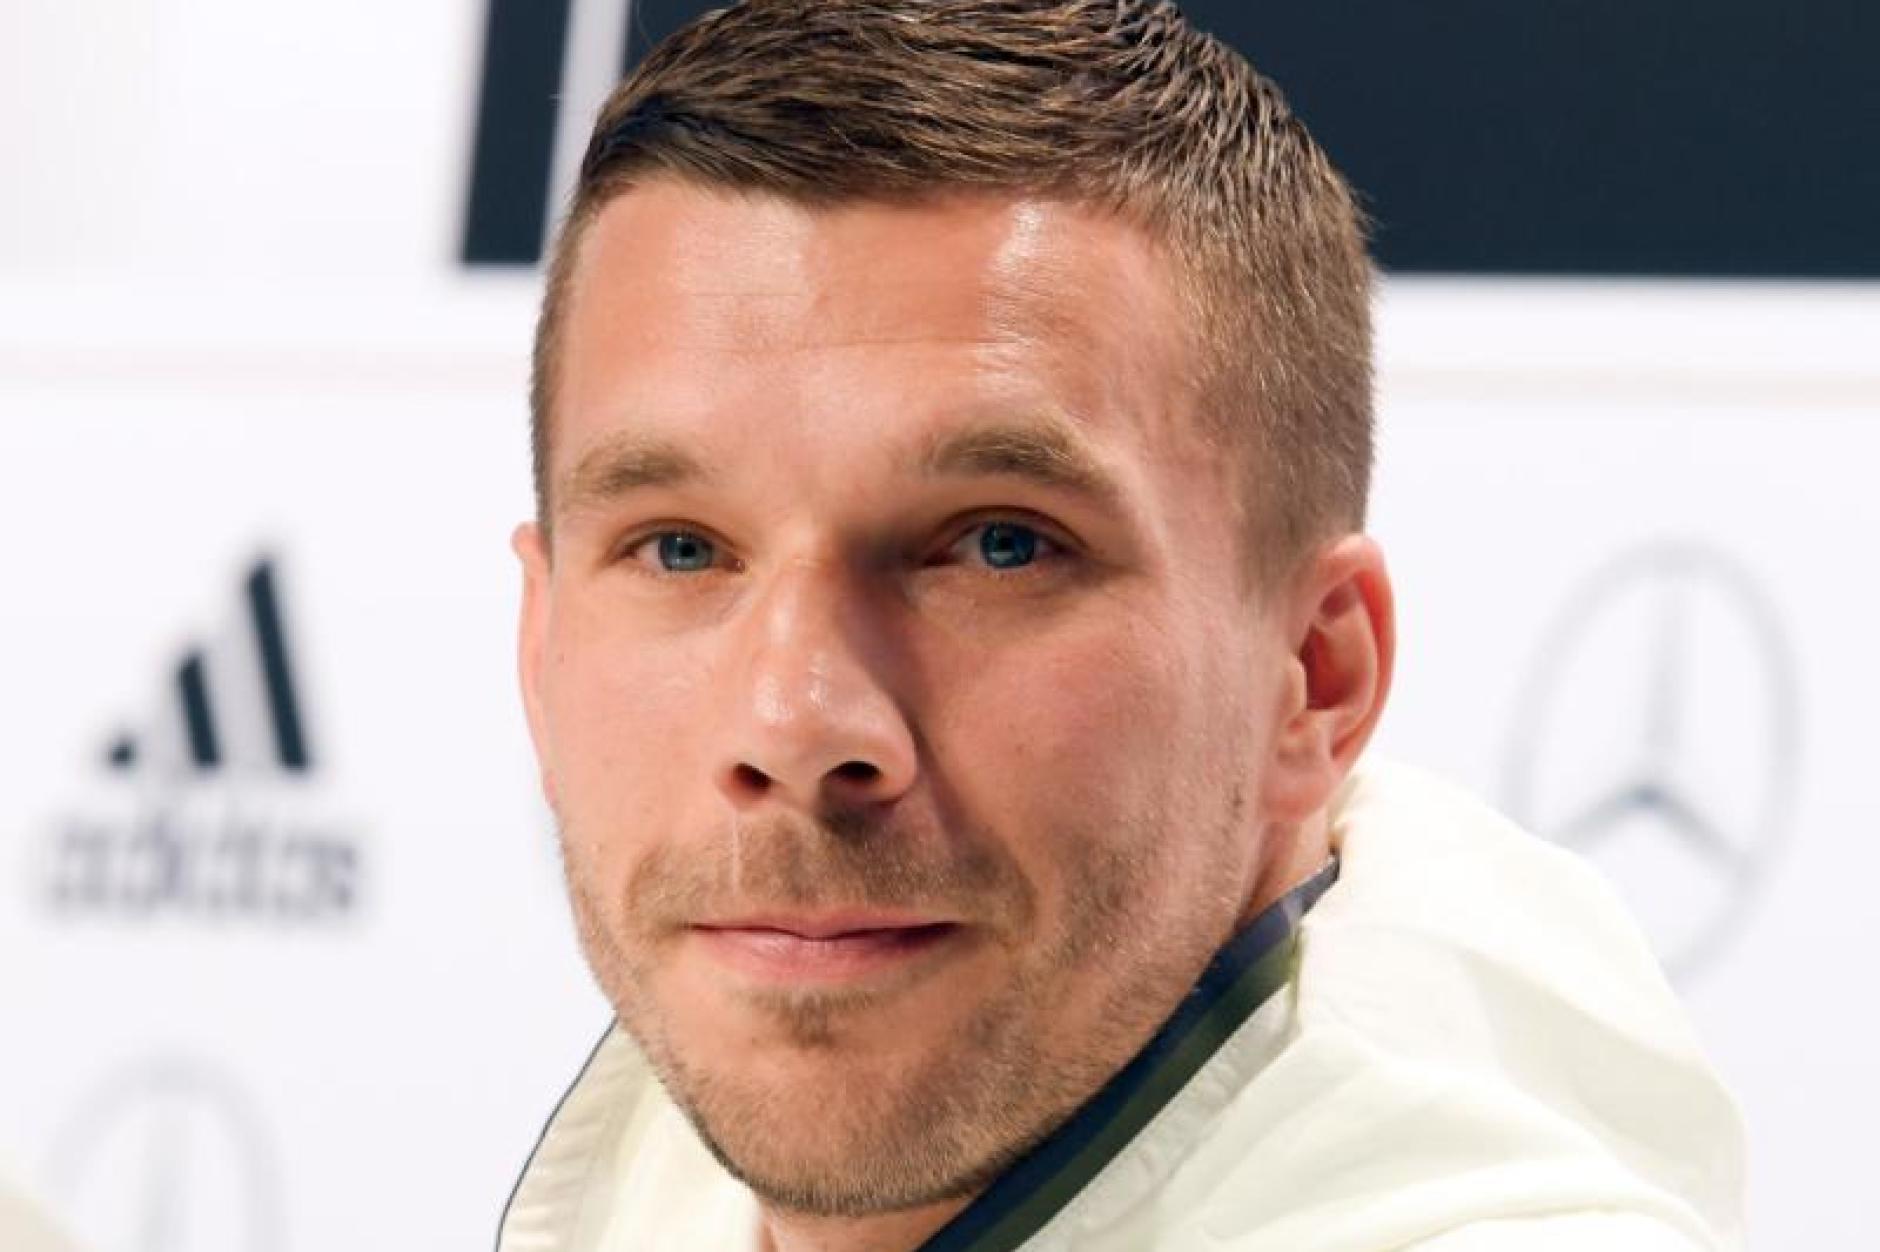 "Rein das Ding": Die besten Sprüche von Lukas Podolski ...